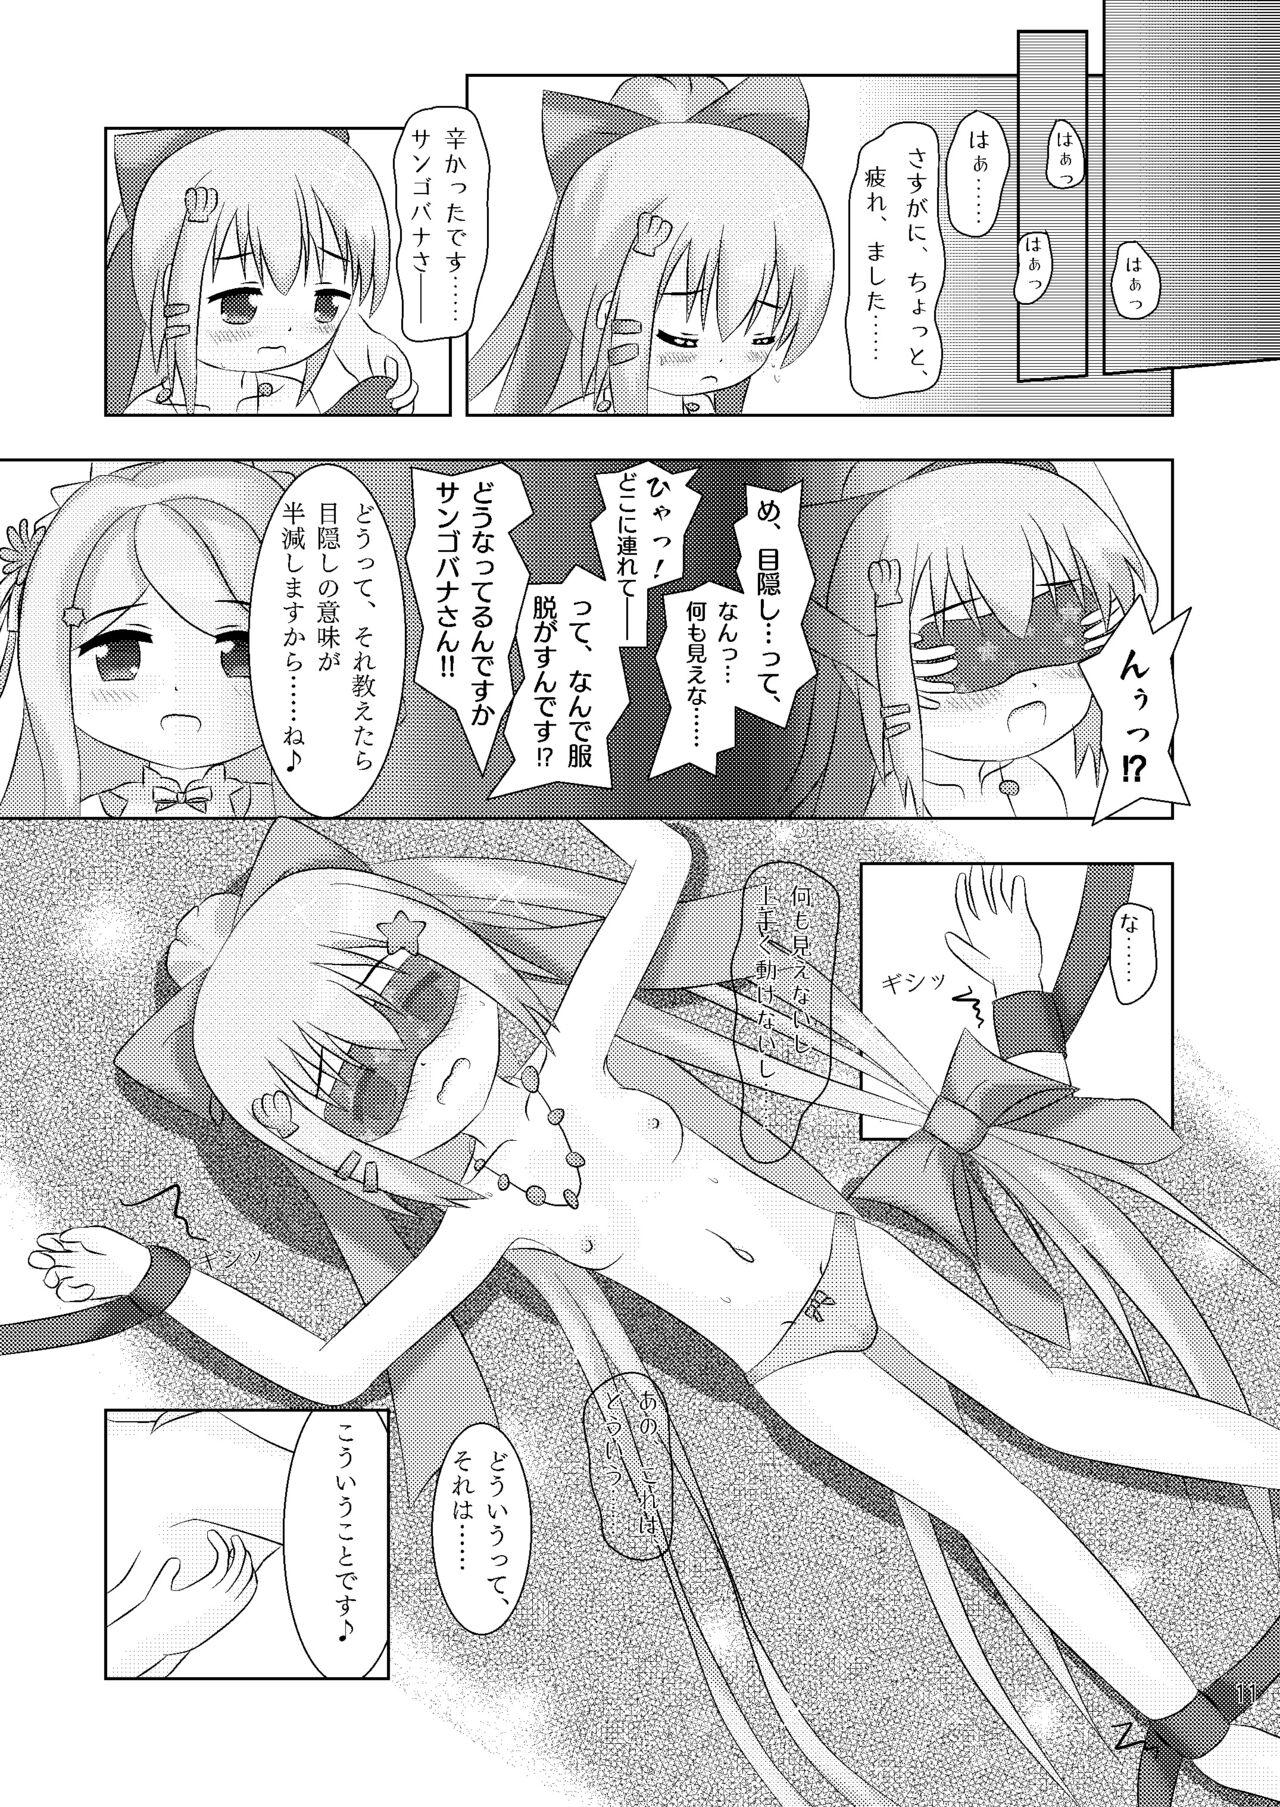 Petite Teenager Yubisaki ni Tokeru Ningyohime - Sangobana to Nerine no Nakayoshi Kusugurikko + X - Flower knight girl Aunt - Page 11